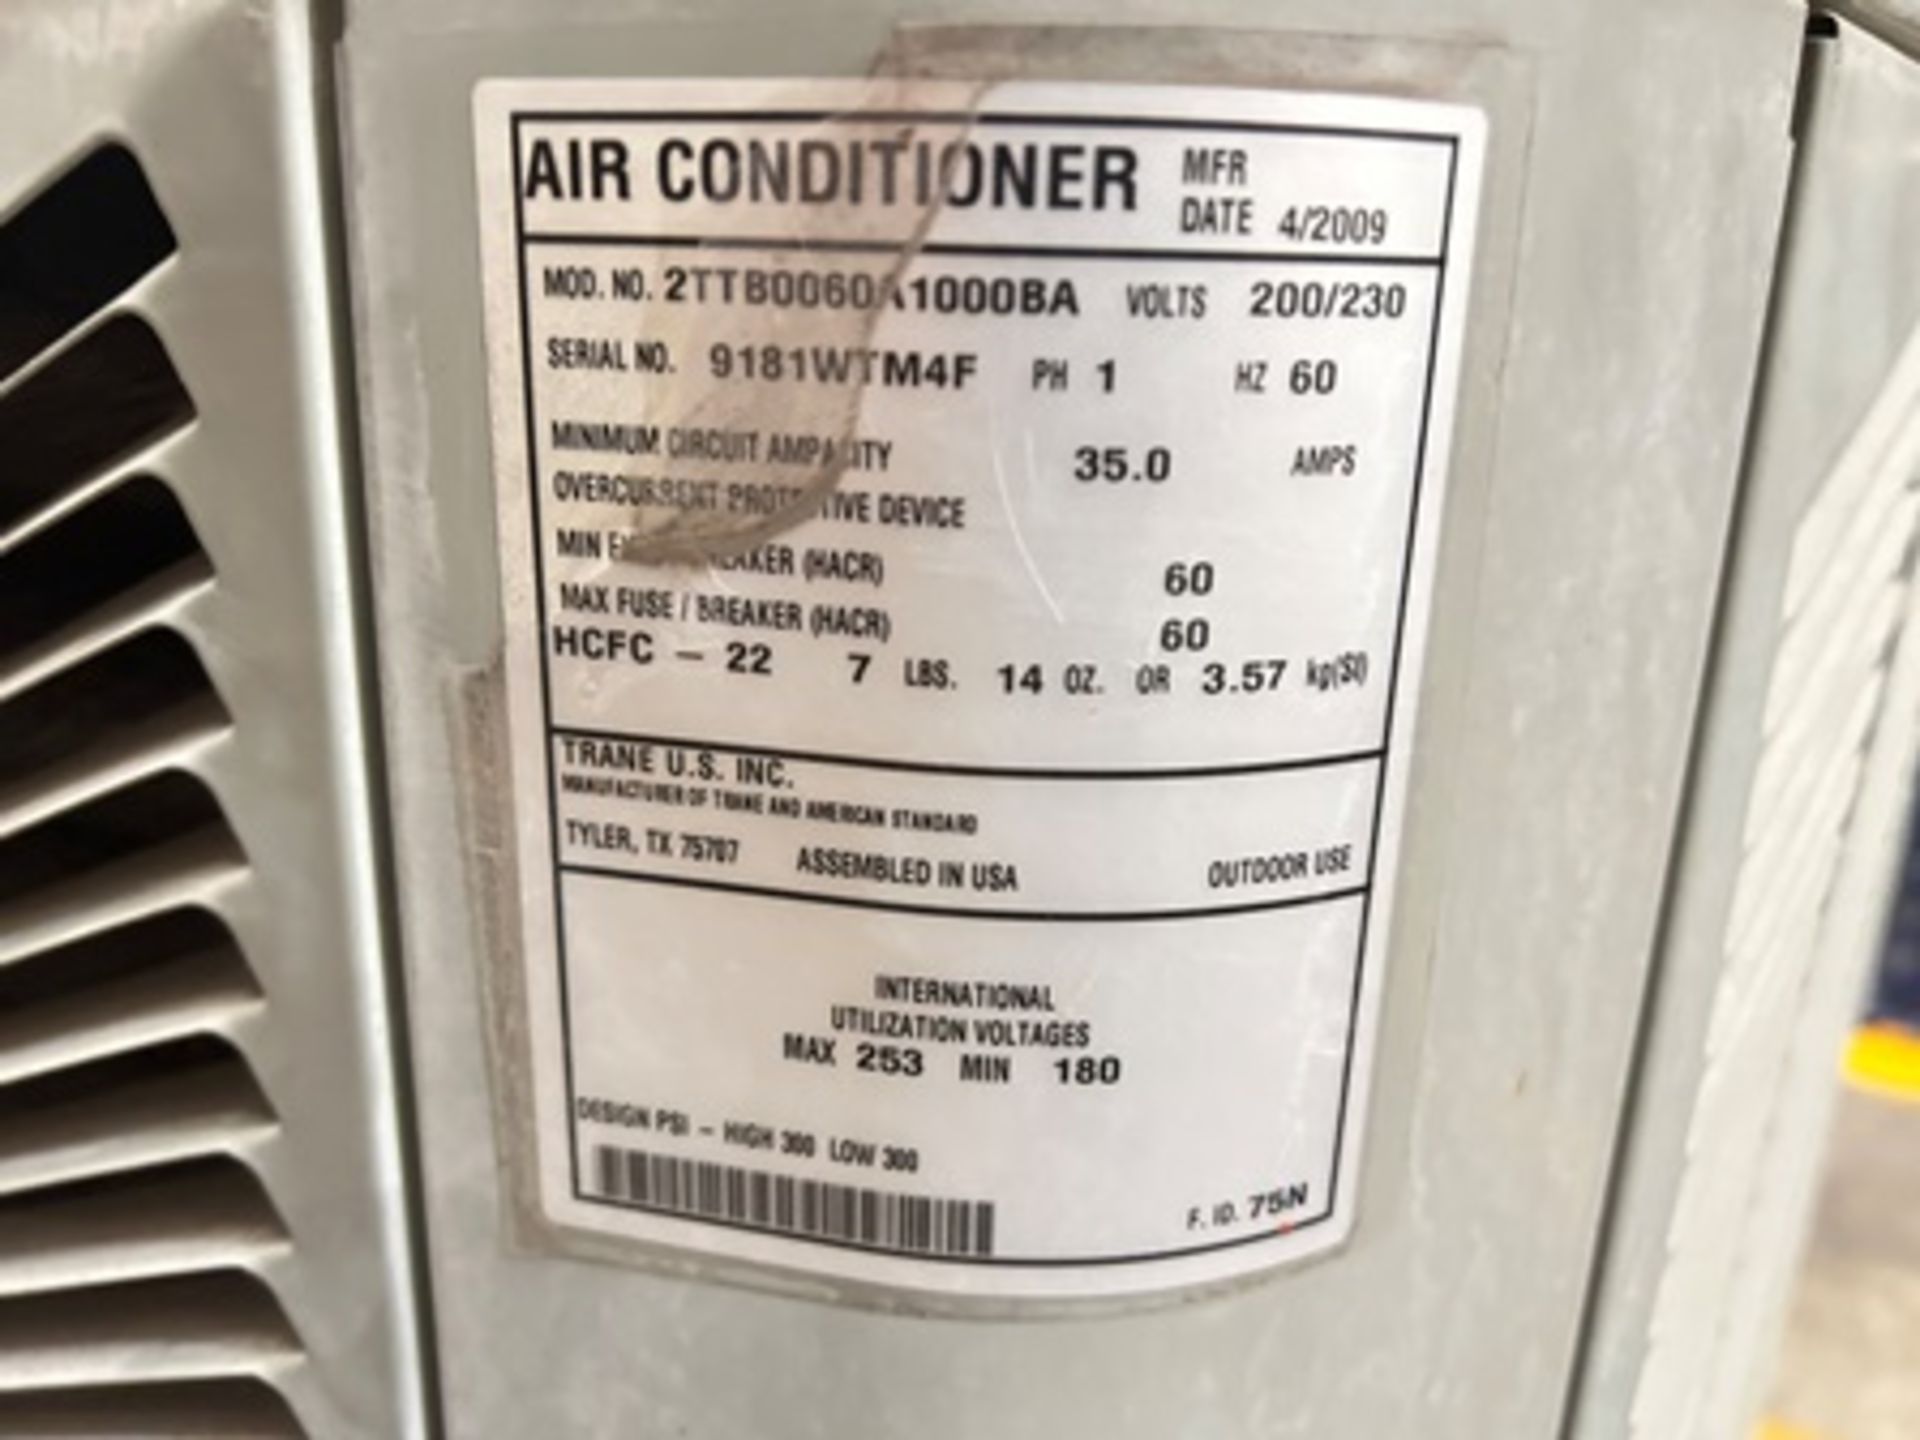 1 Condensador Marca TRANE, Modelo 2TTB0060A1000BA, Serie 9181WTM4F, Color Gris, 200-230 v, 60 Hz (E - Image 5 of 6